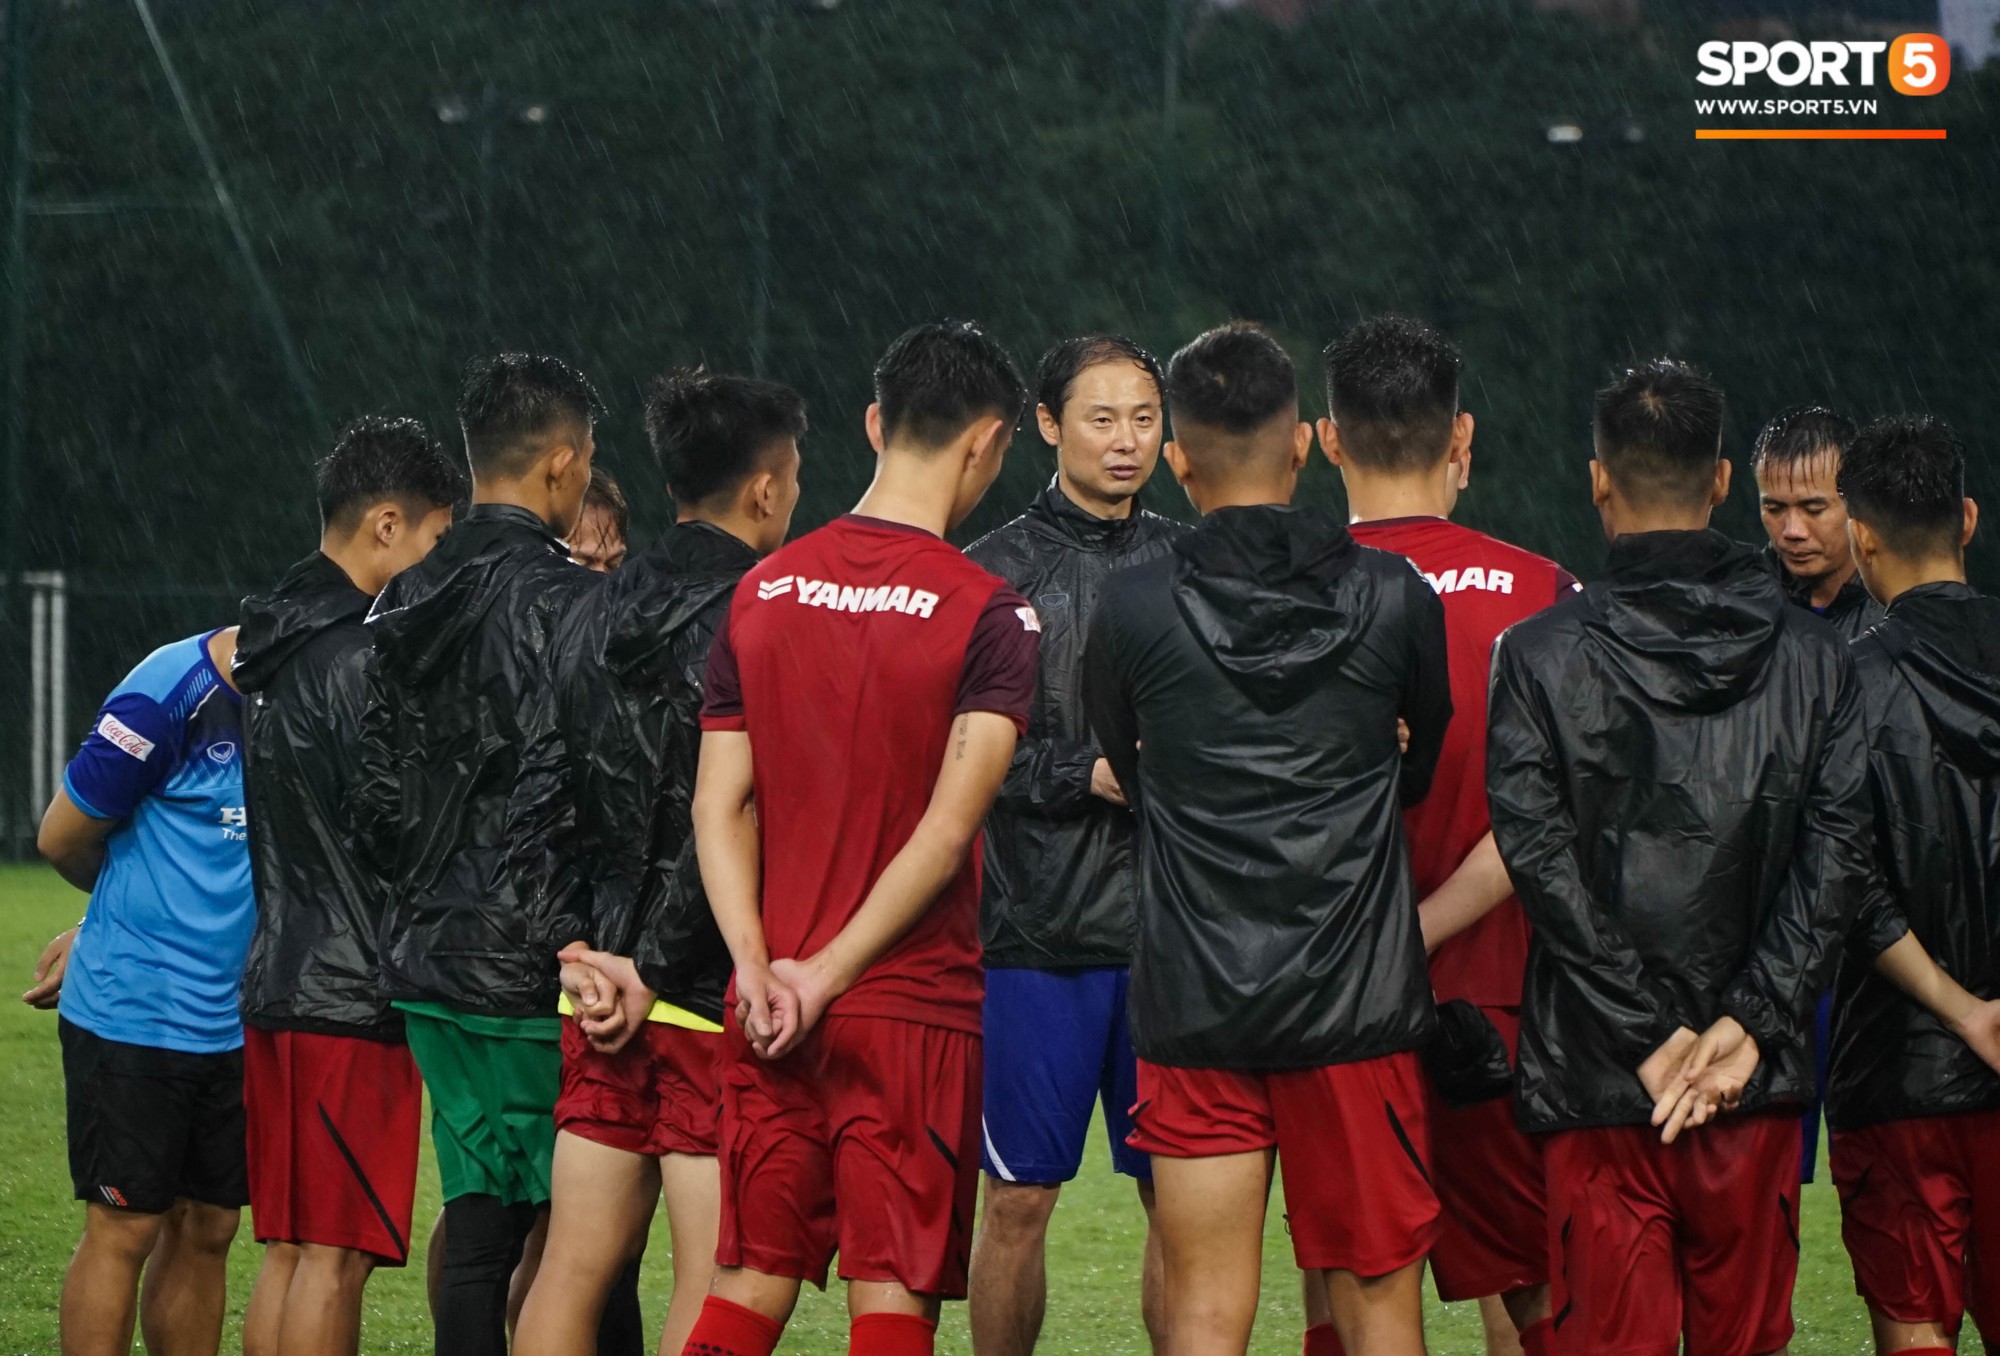 U23 Việt Nam tập luyện dưới trời mưa tầm tã trong ngày đầu làm việc với trợ lý mới thầy Park - Ảnh 8.